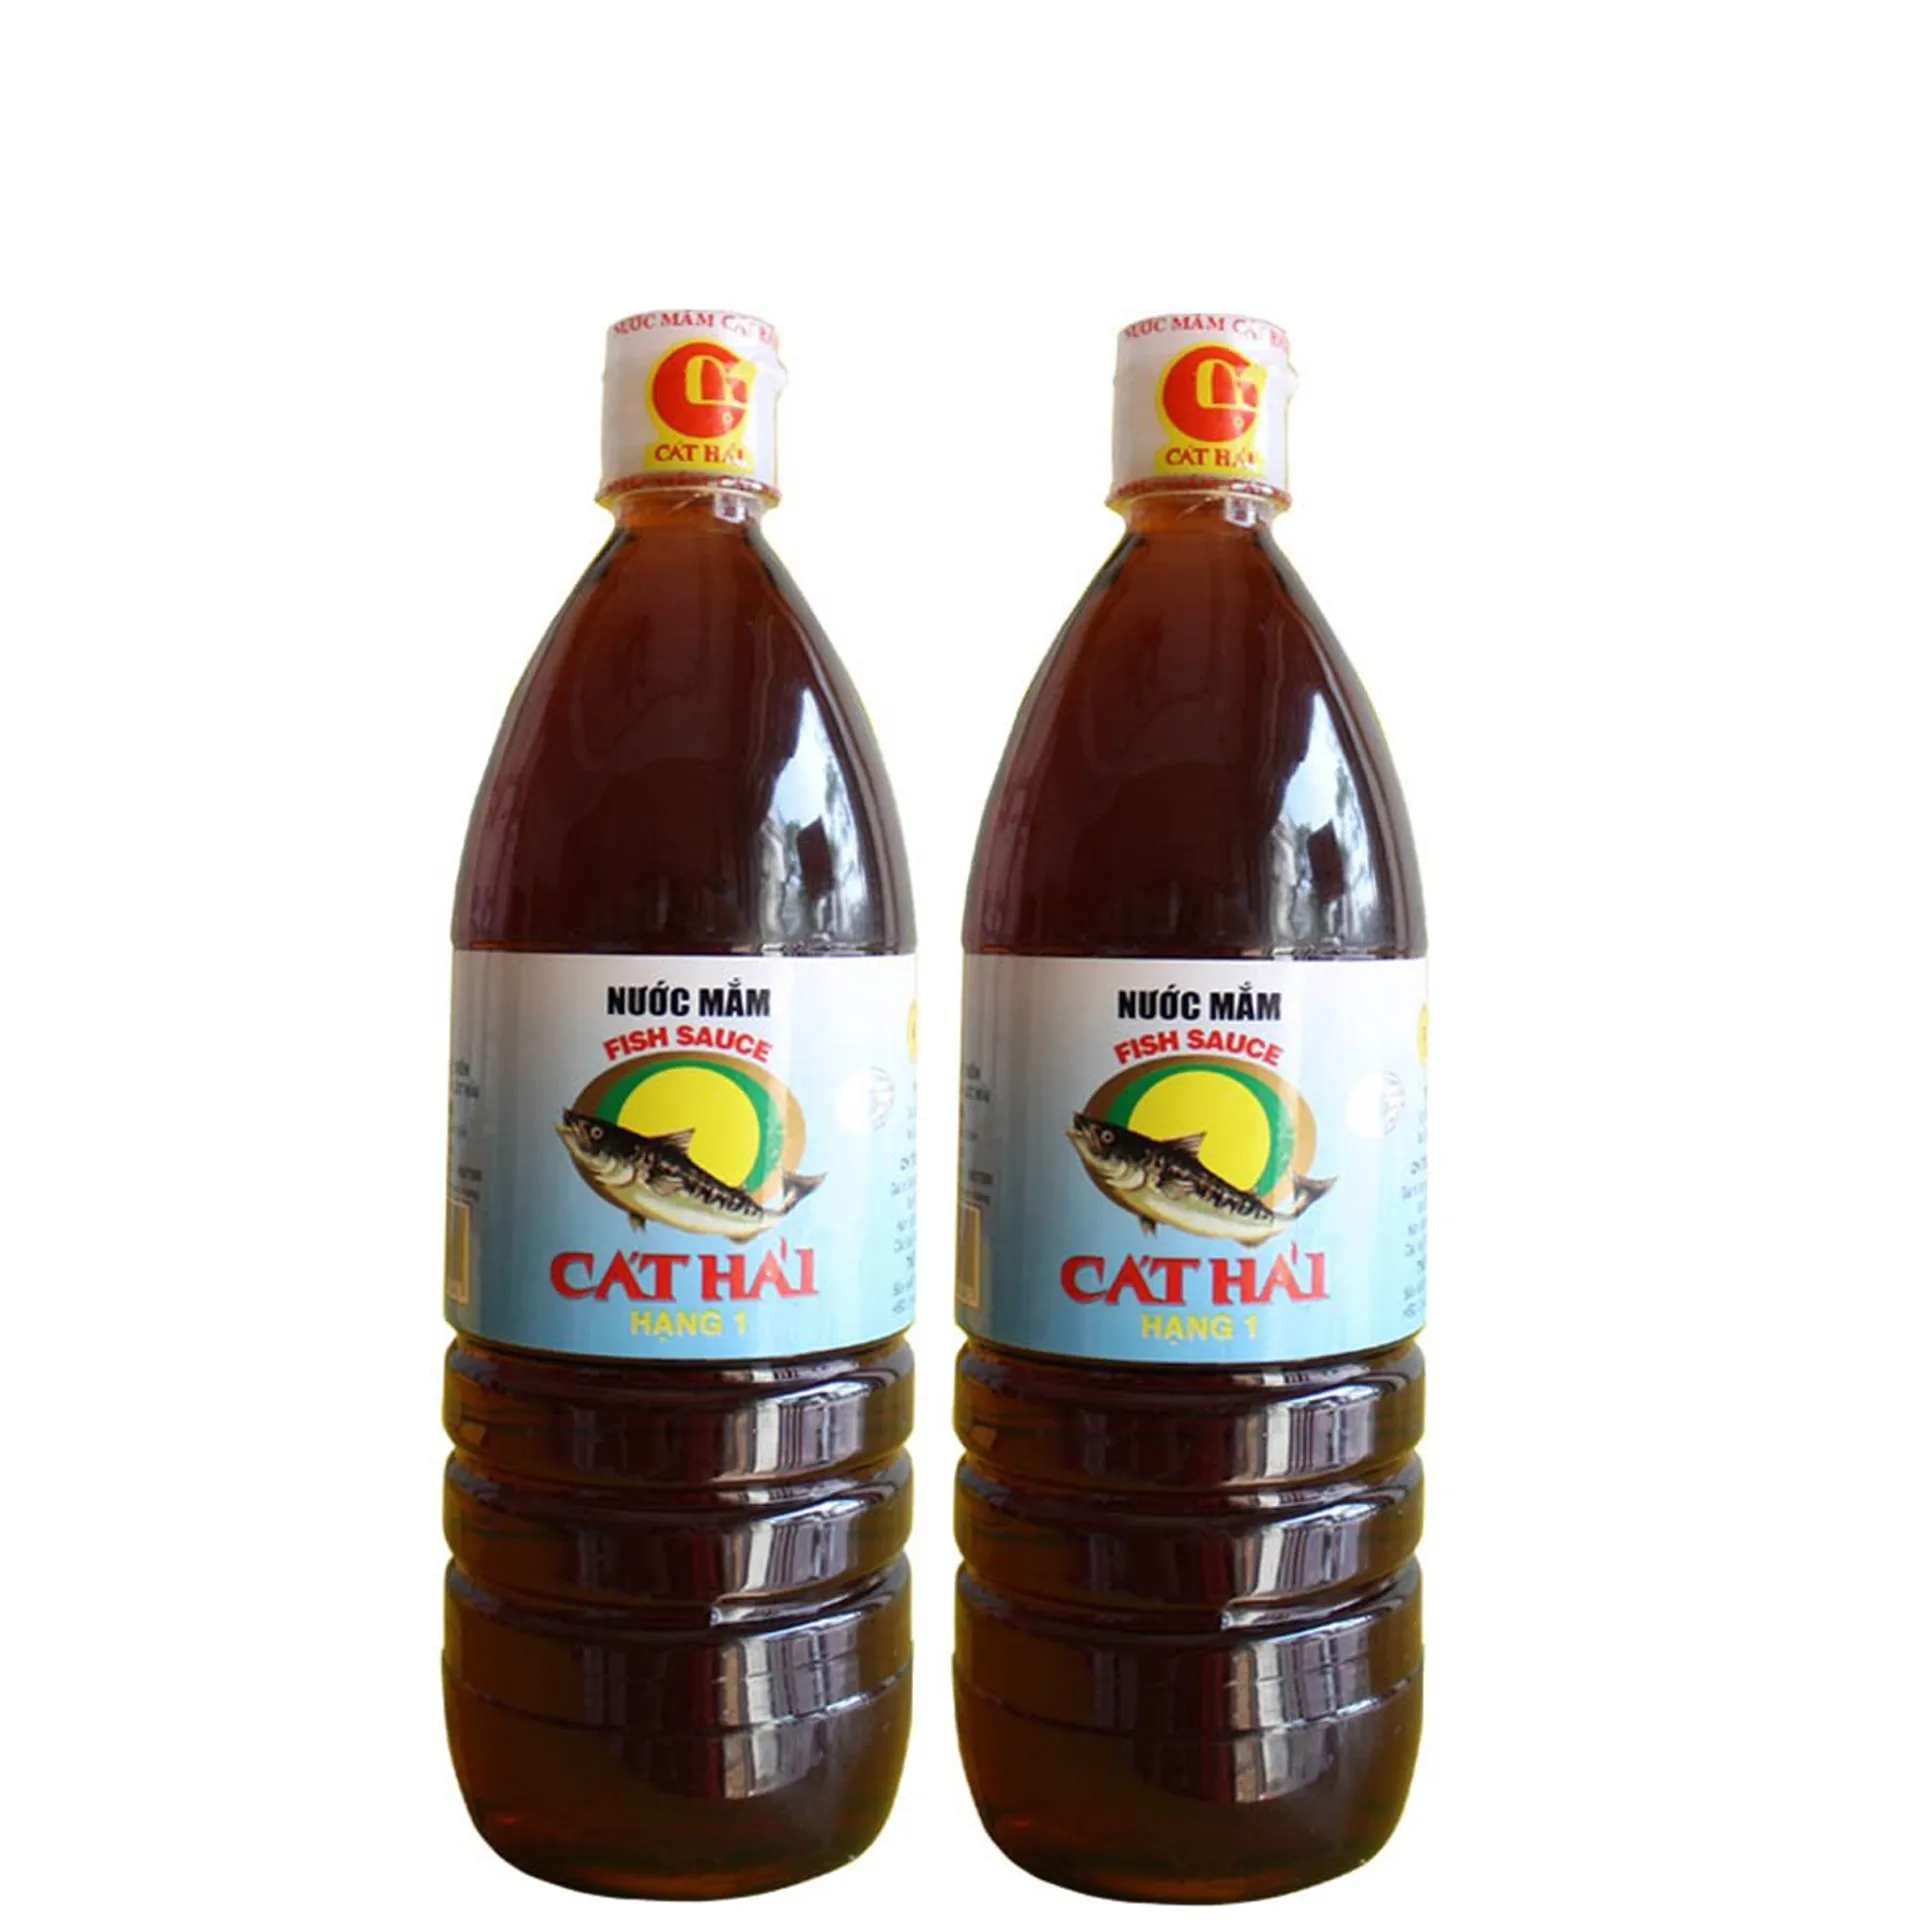 Cat Hai fish sauce